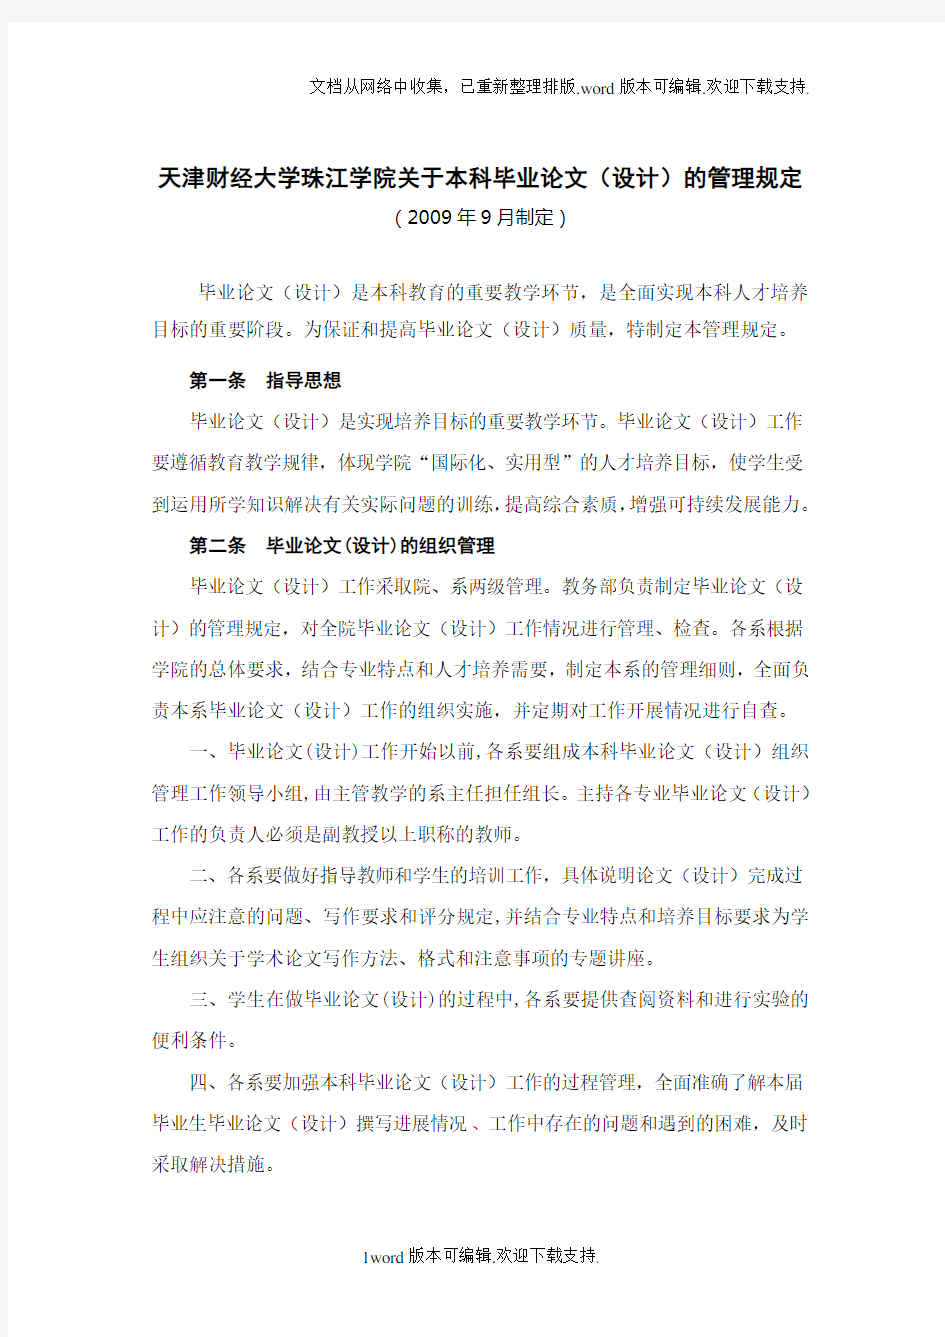 天津财经大学珠江学院关于本科毕业论文设计的管理规定